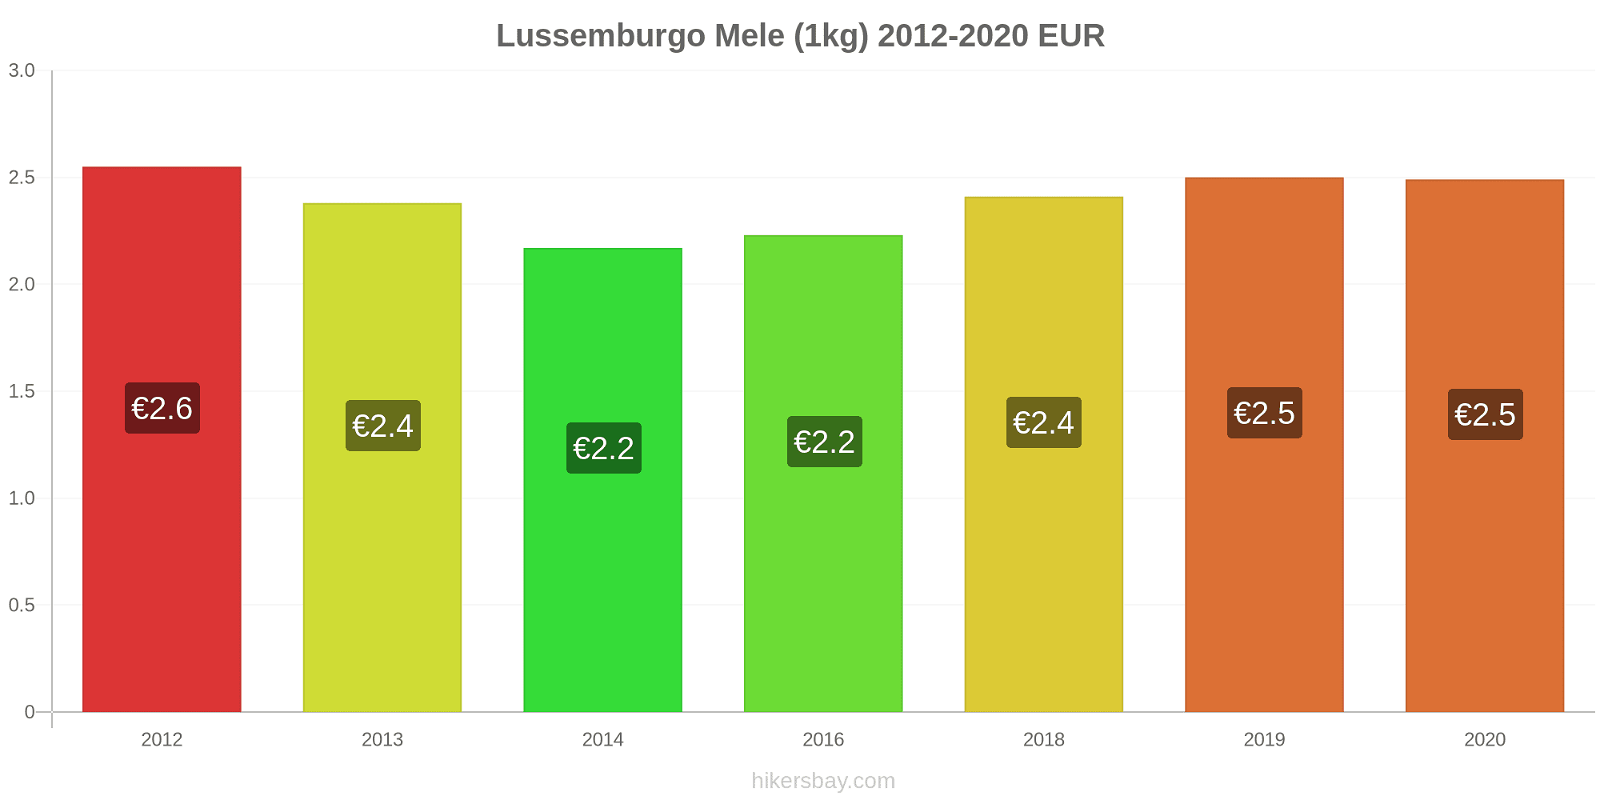 Lussemburgo variazioni di prezzo Mele (1kg) hikersbay.com